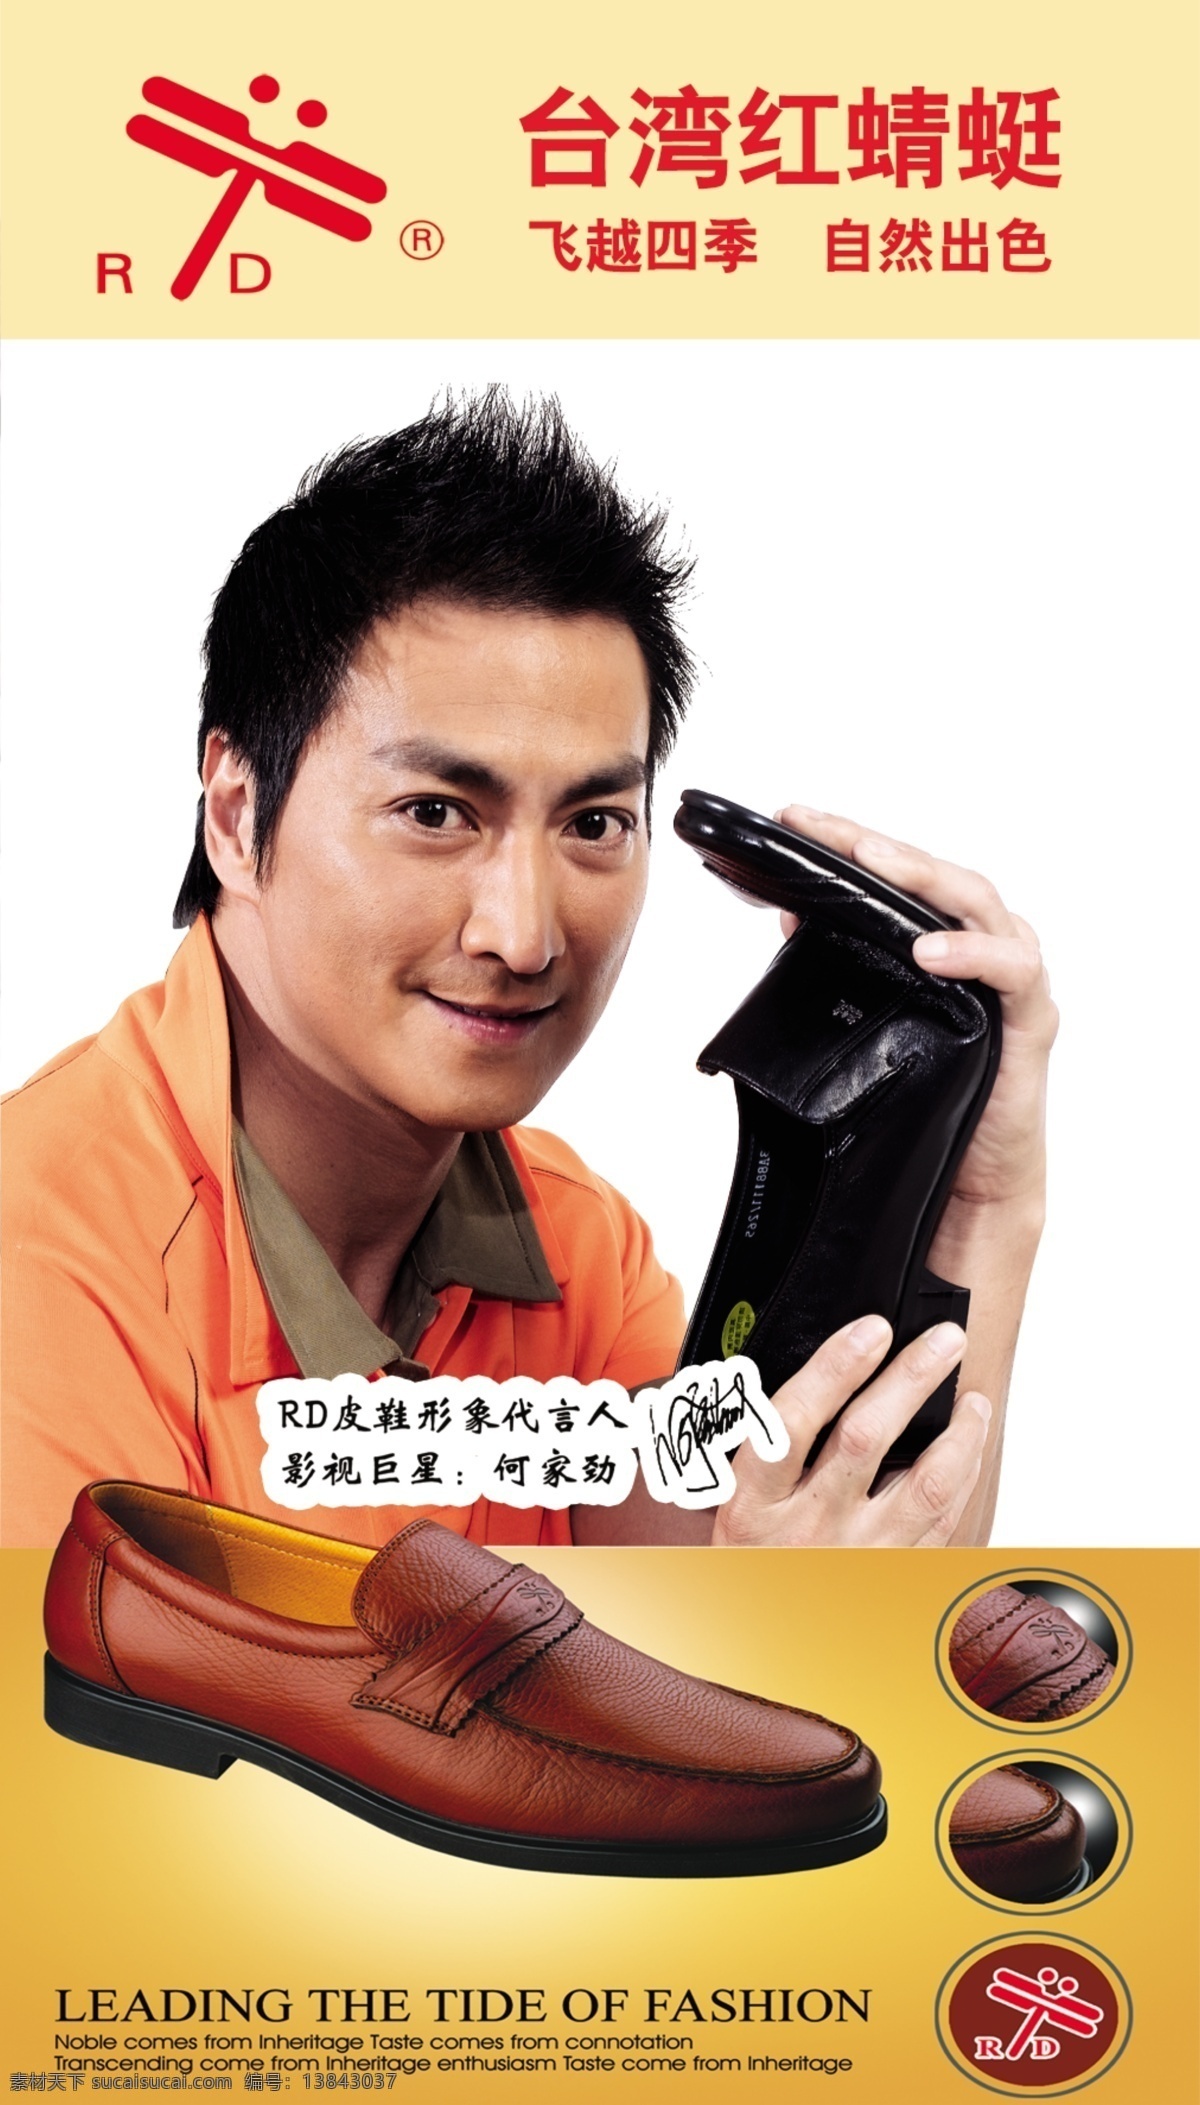 红蜻蜓 台湾红蜻蜓 何家劲 男鞋 皮鞋 红 蜻蜓 logo 海报 广告设计模板 源文件